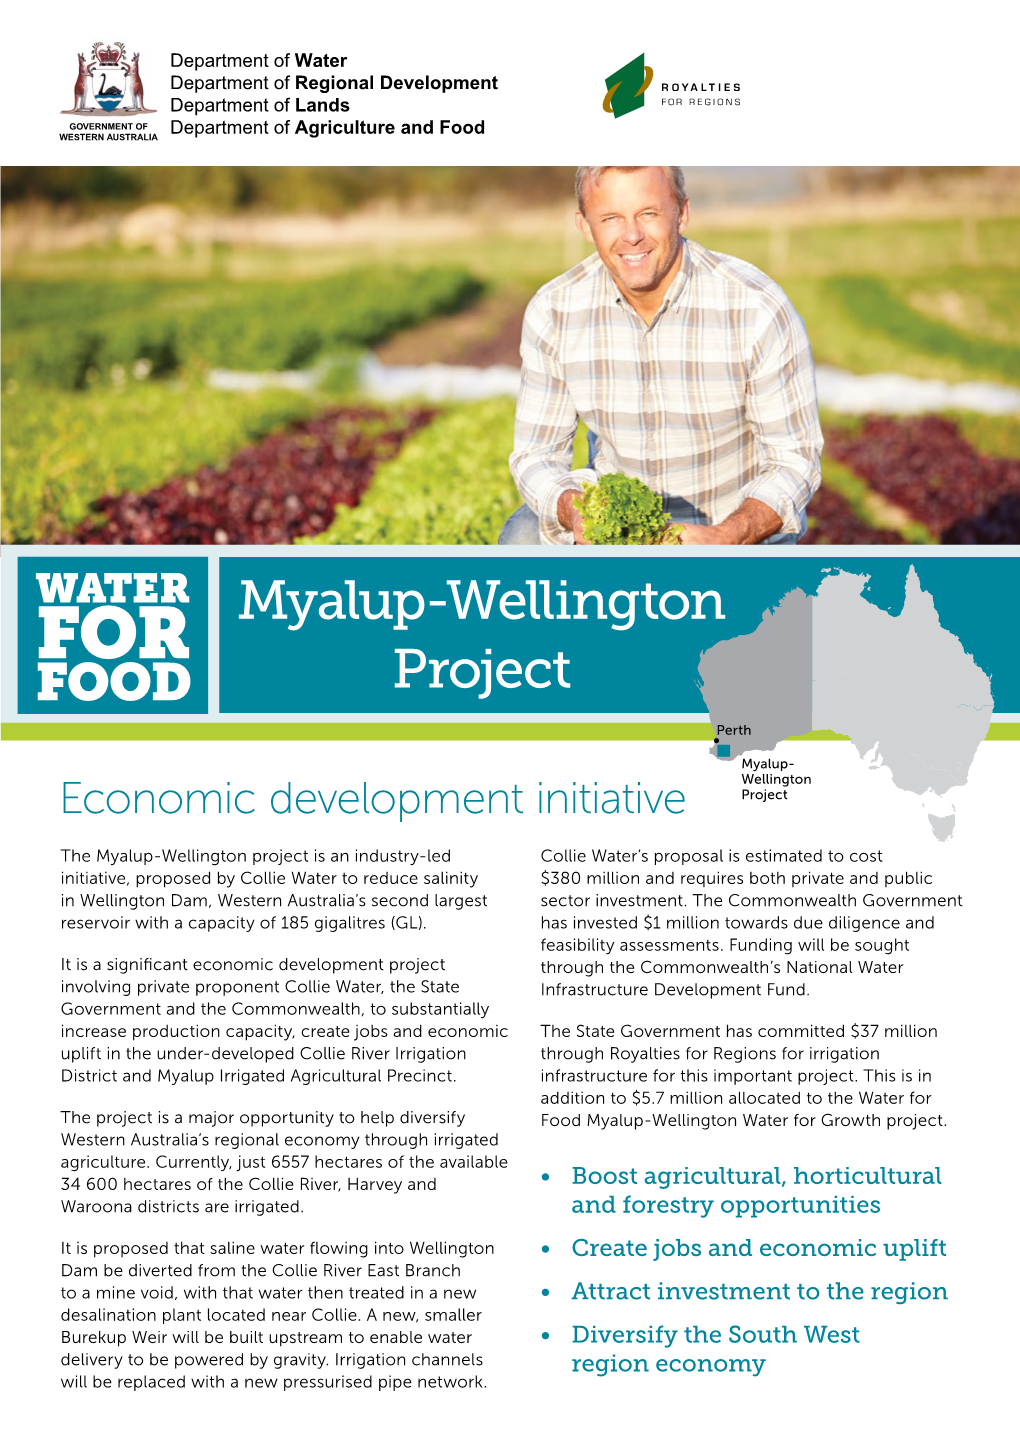 Myalup-Wellington Project